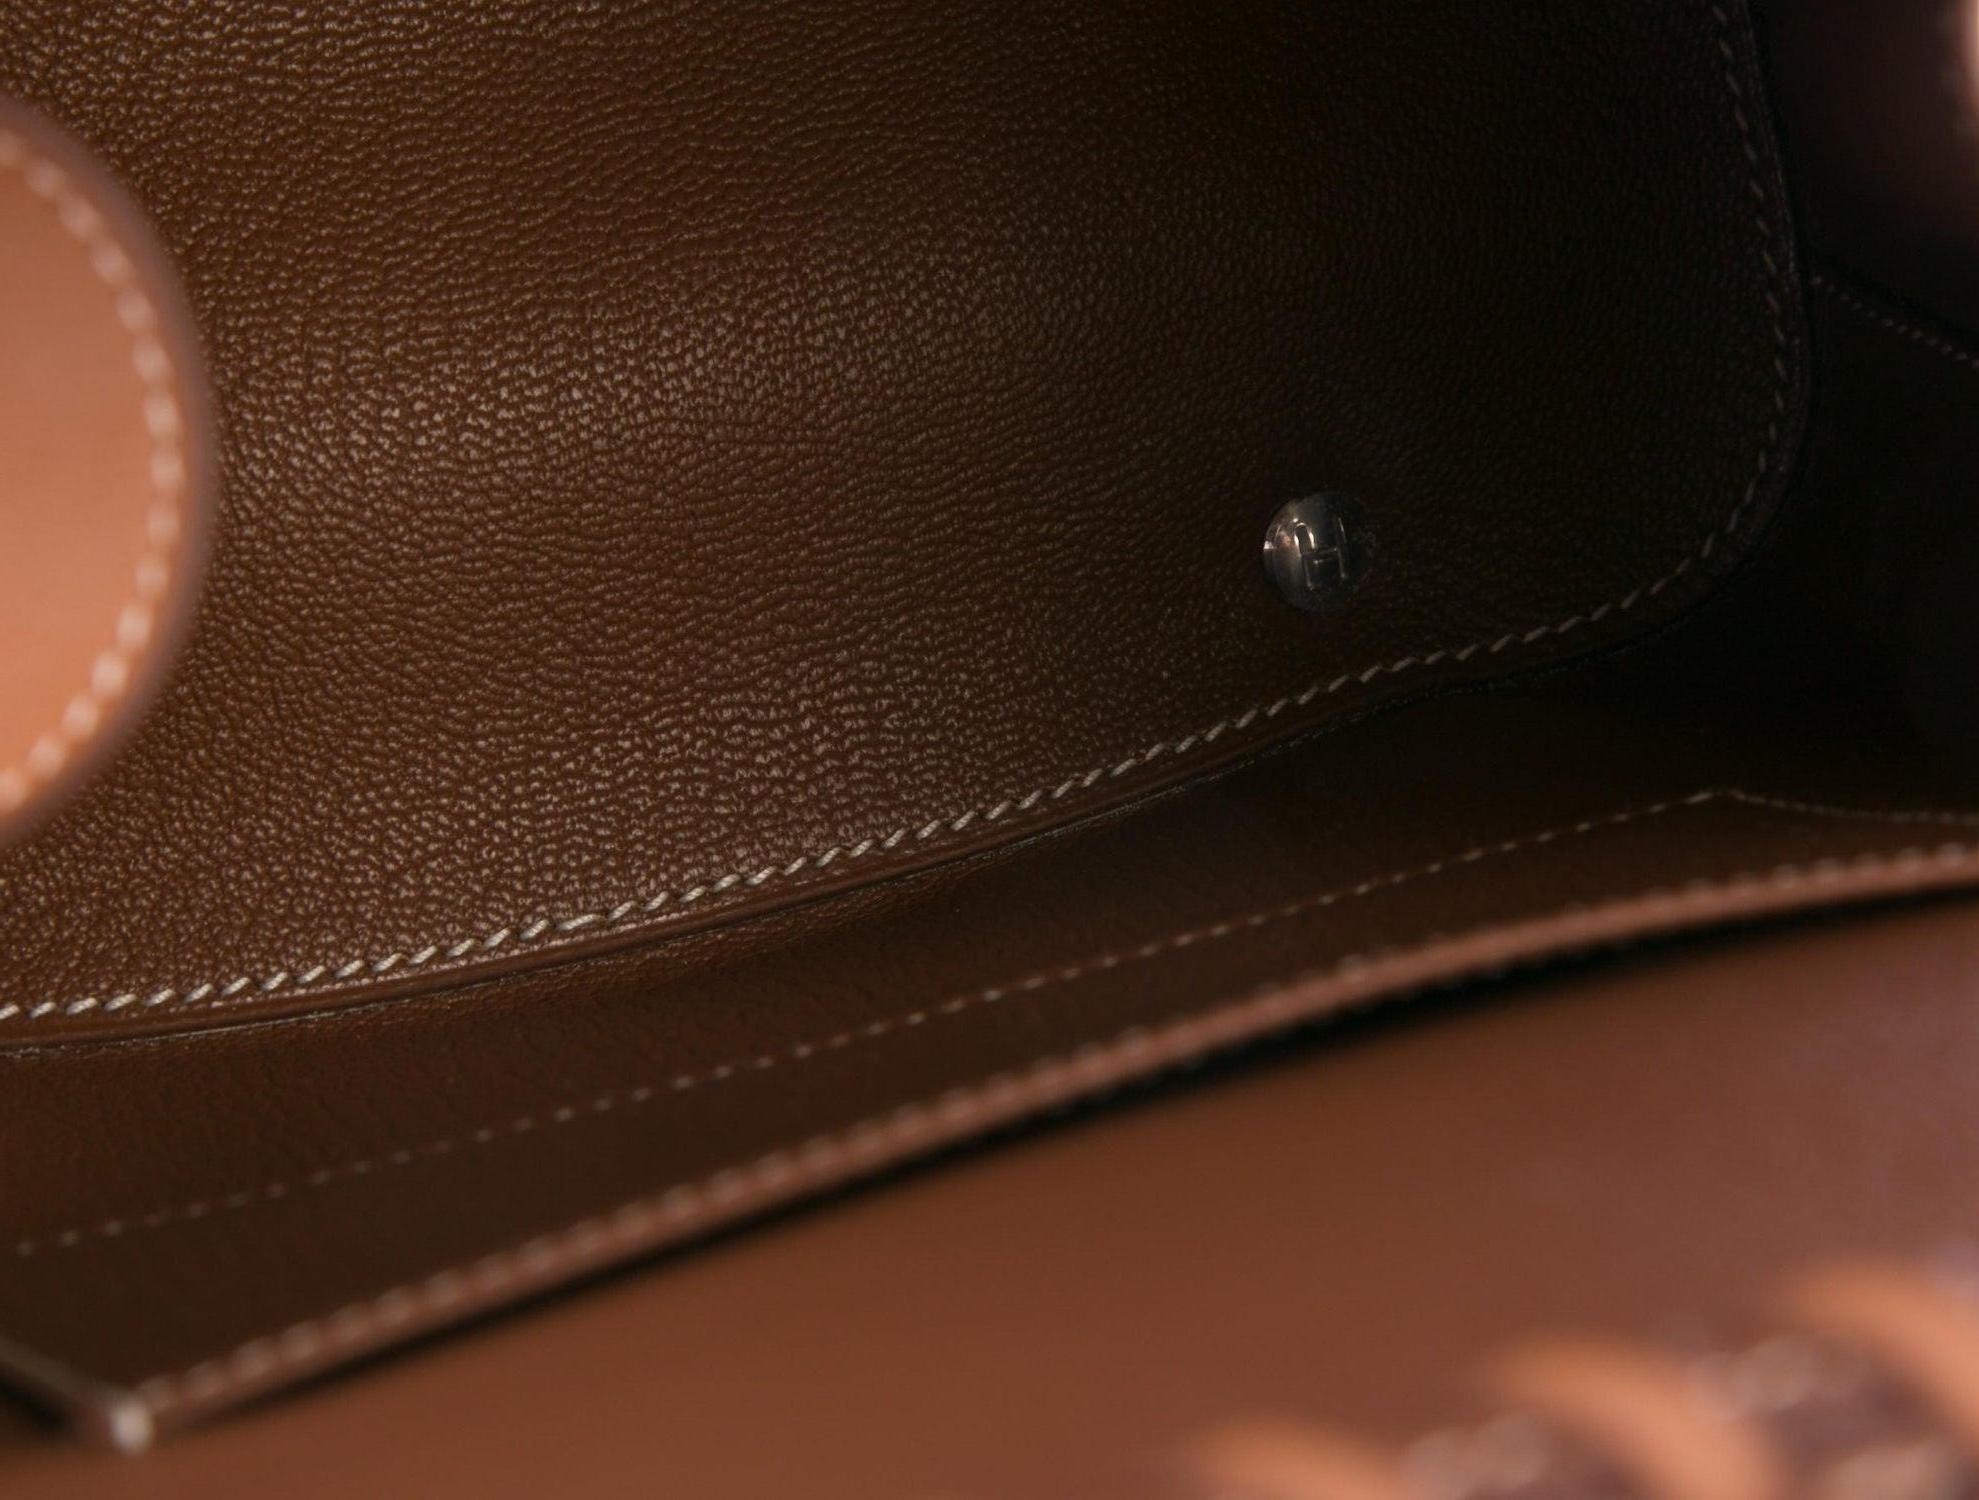 Hermes NEW Tan Wicker Cognac Leather Top Handle Satchel Bag with Dust Bag & Box Damen